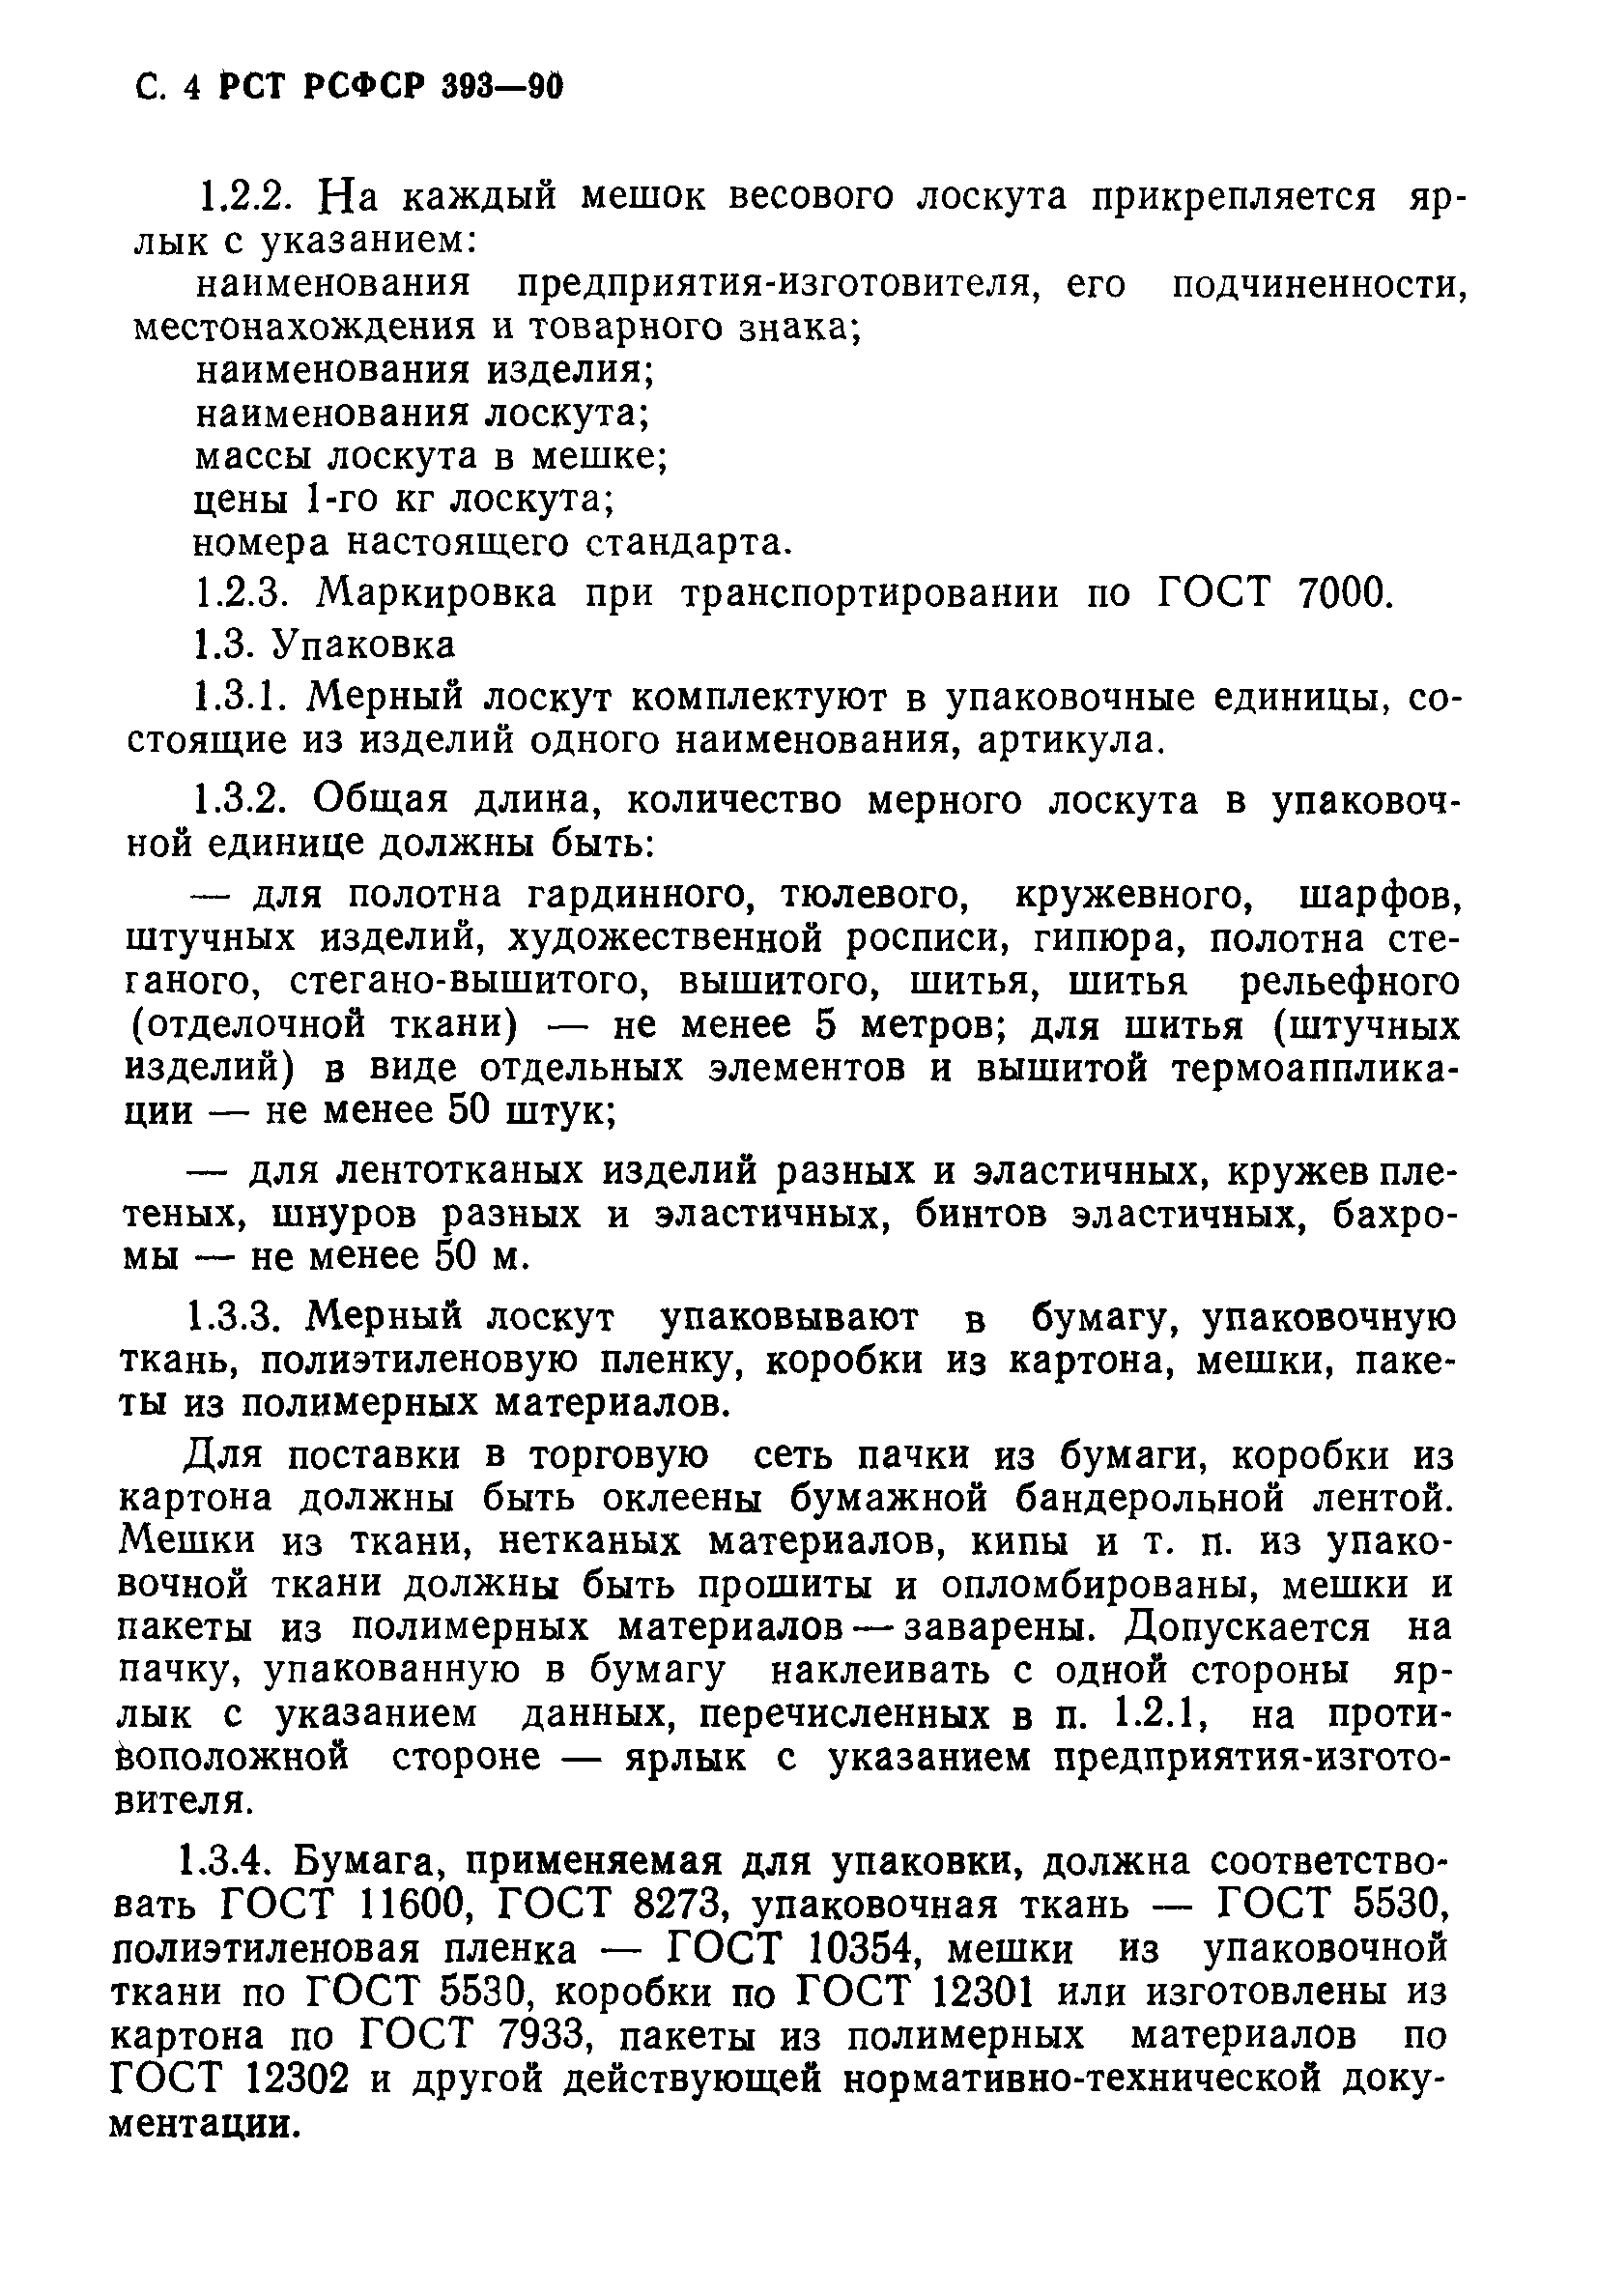 РСТ РСФСР 393-90